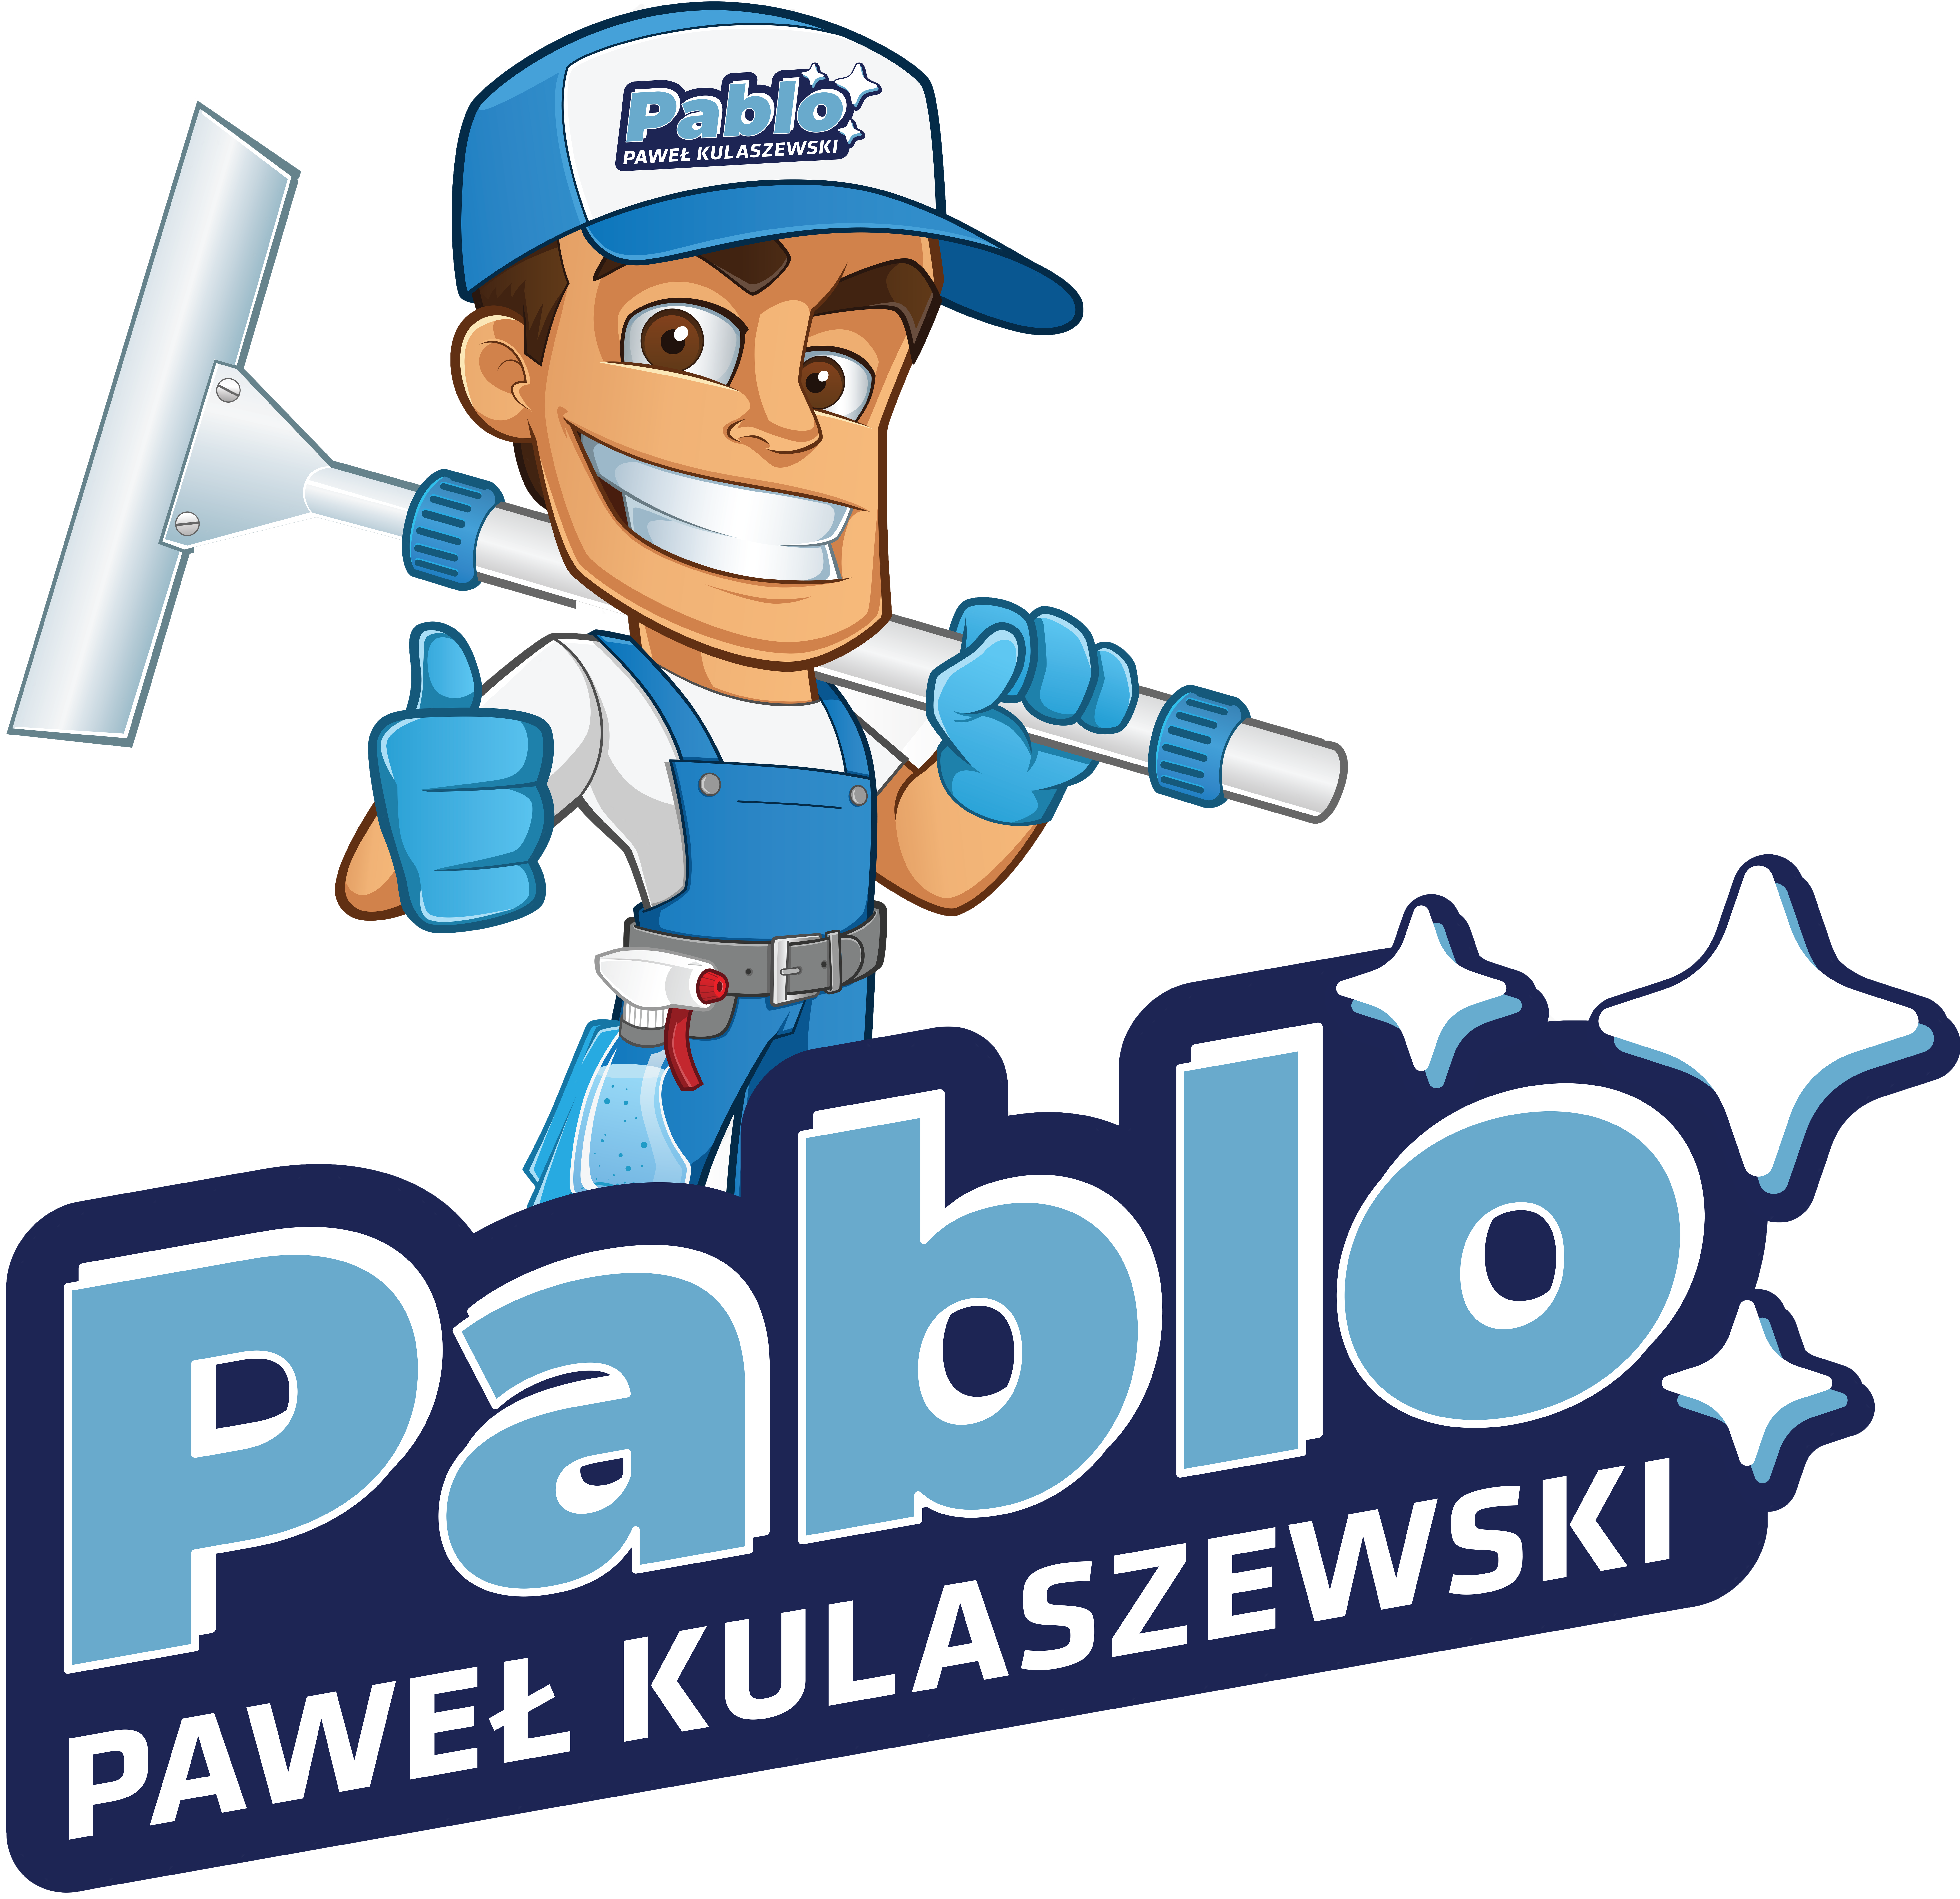 pablo2